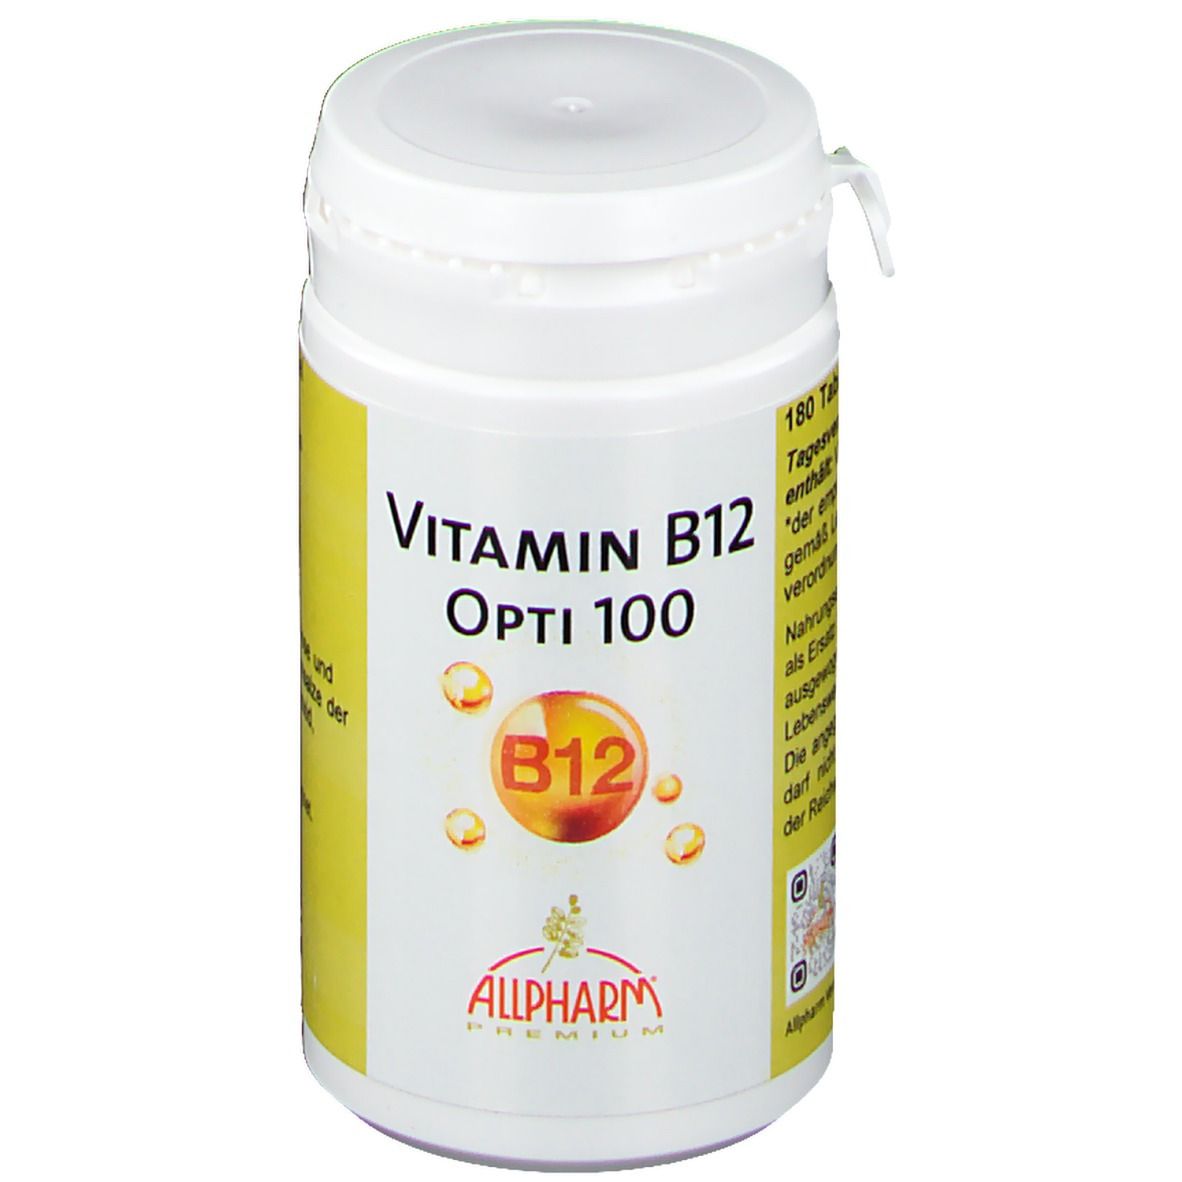 Vitamine B12 Opti 100